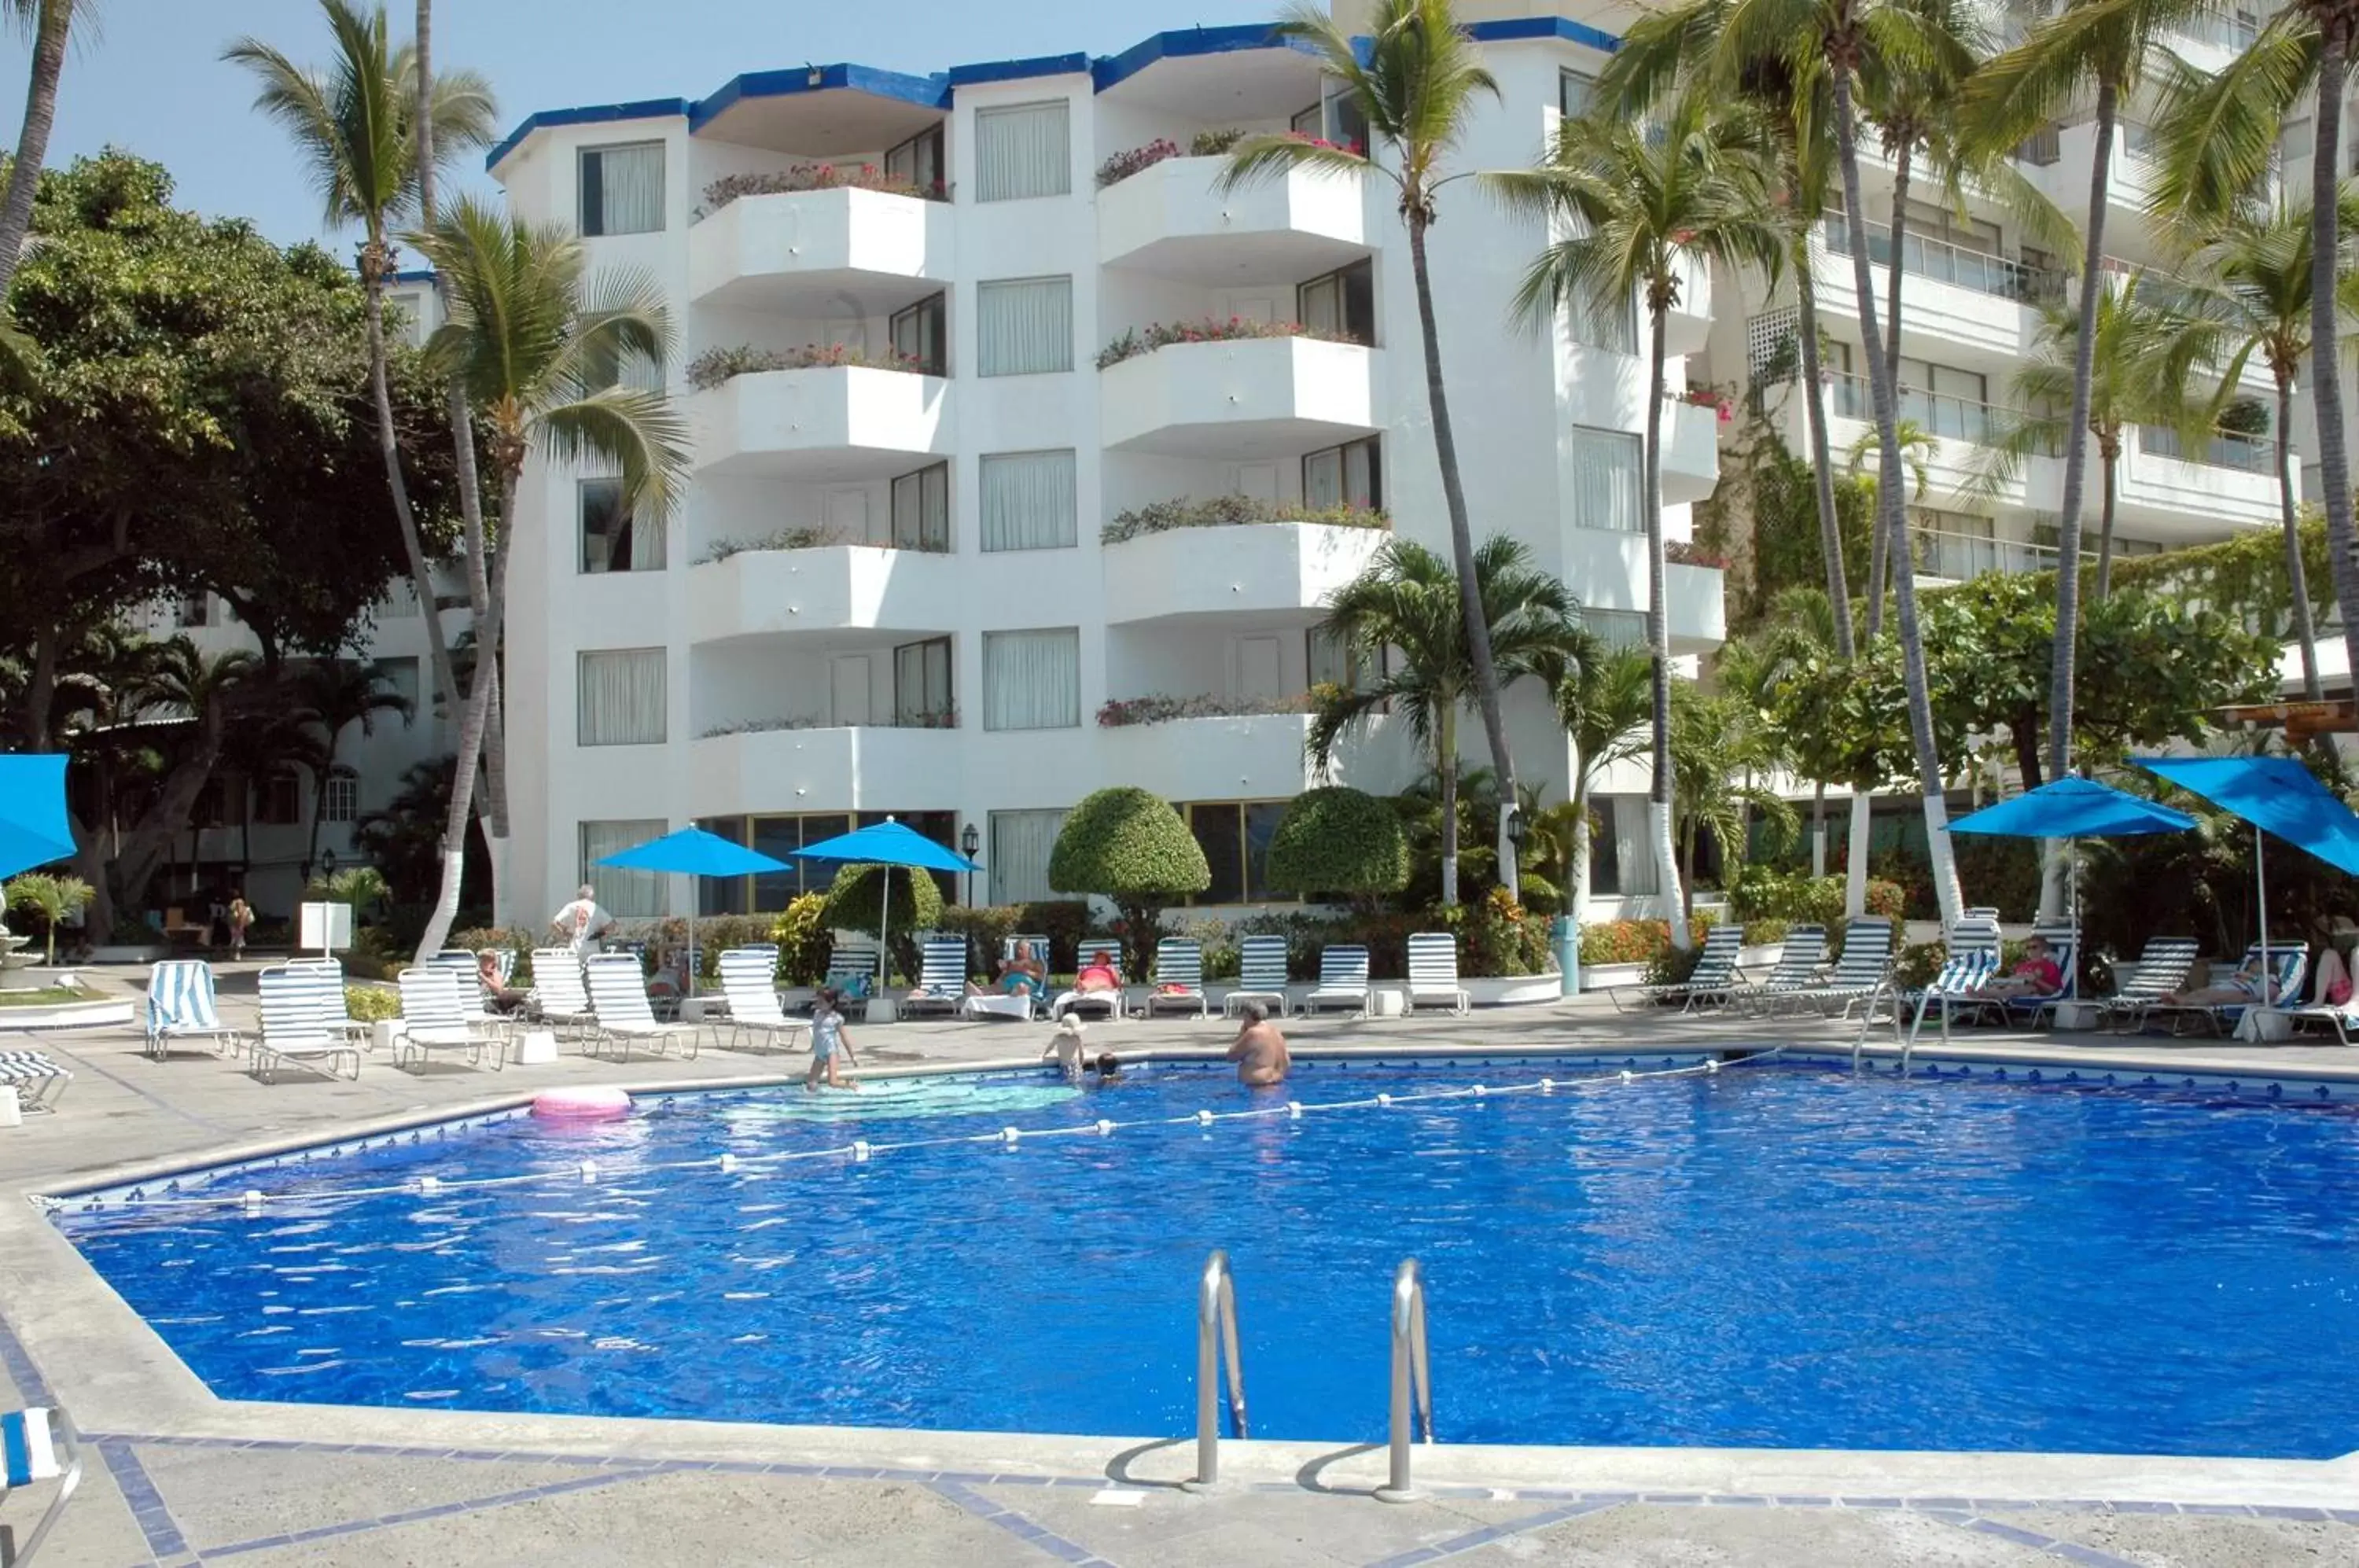 Swimming Pool in Hotel Acapulco Malibu